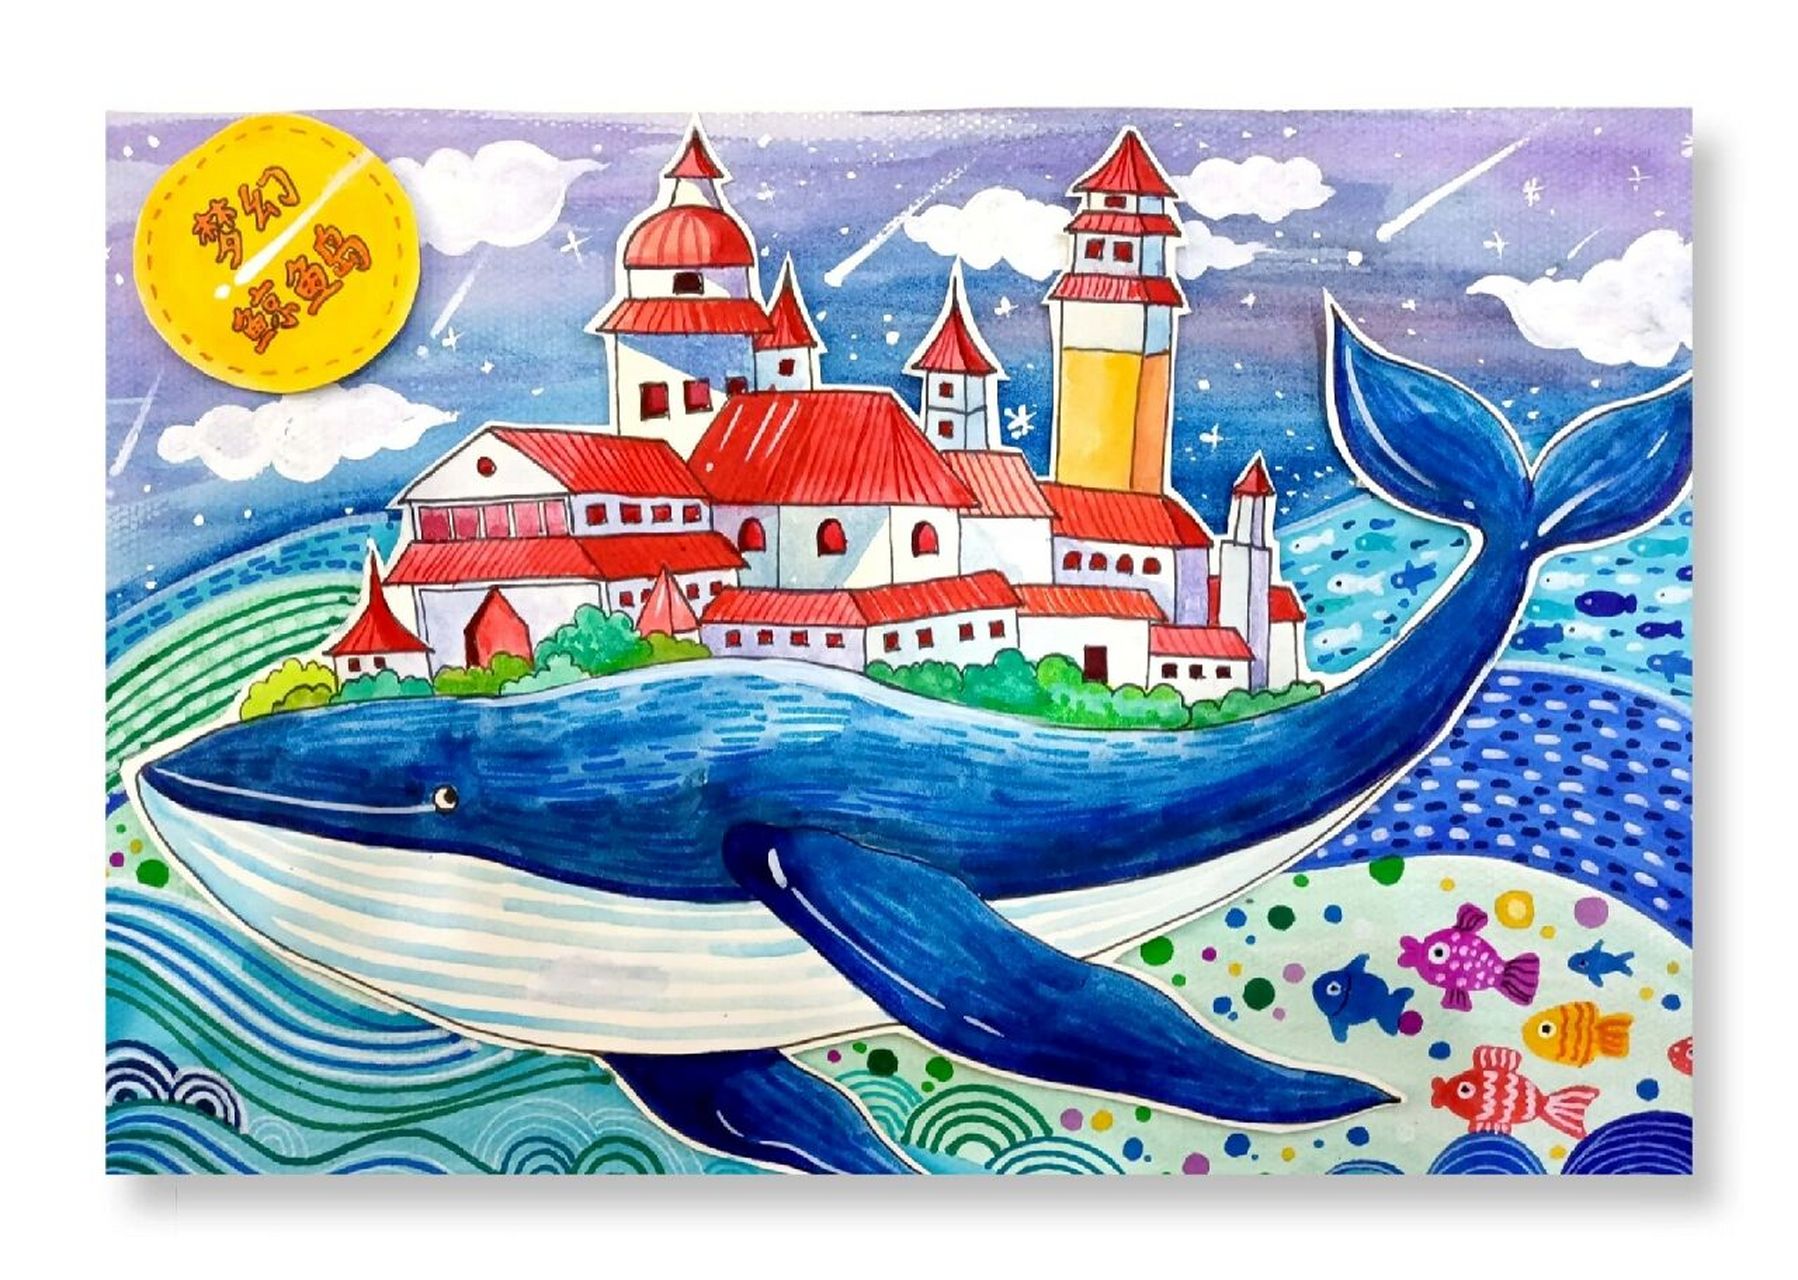 创意绘画——梦幻鲸鱼岛 主题:《梦幻鲸鱼岛》适合年龄:8—10岁教学